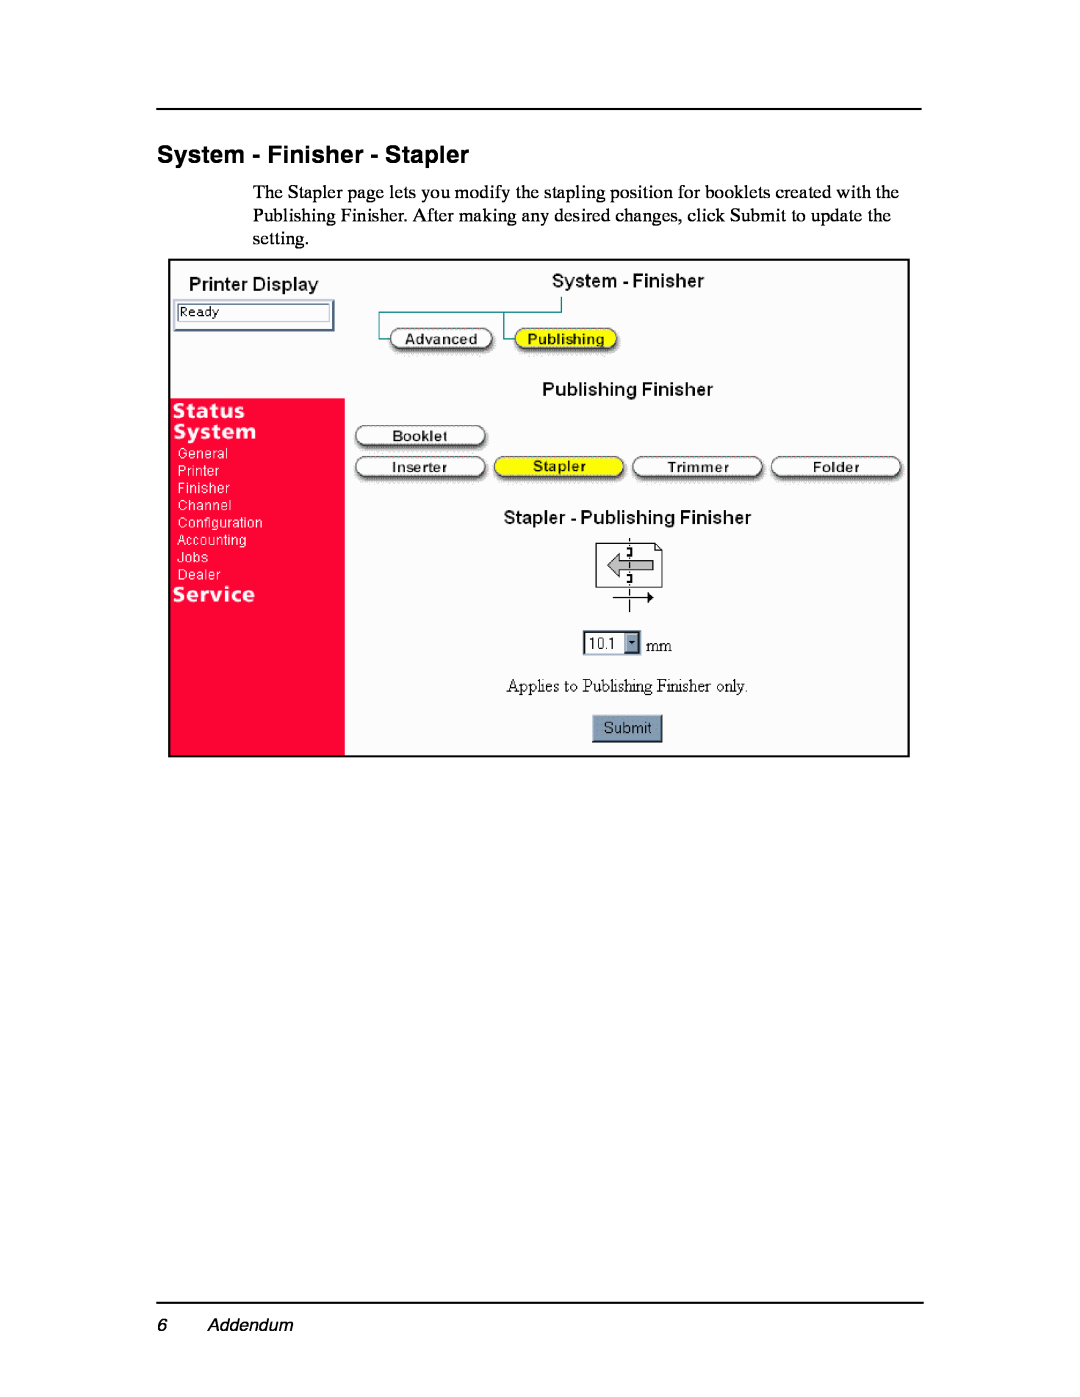 Ricoh DDP 184 manual System - Finisher - Stapler, Addendum 